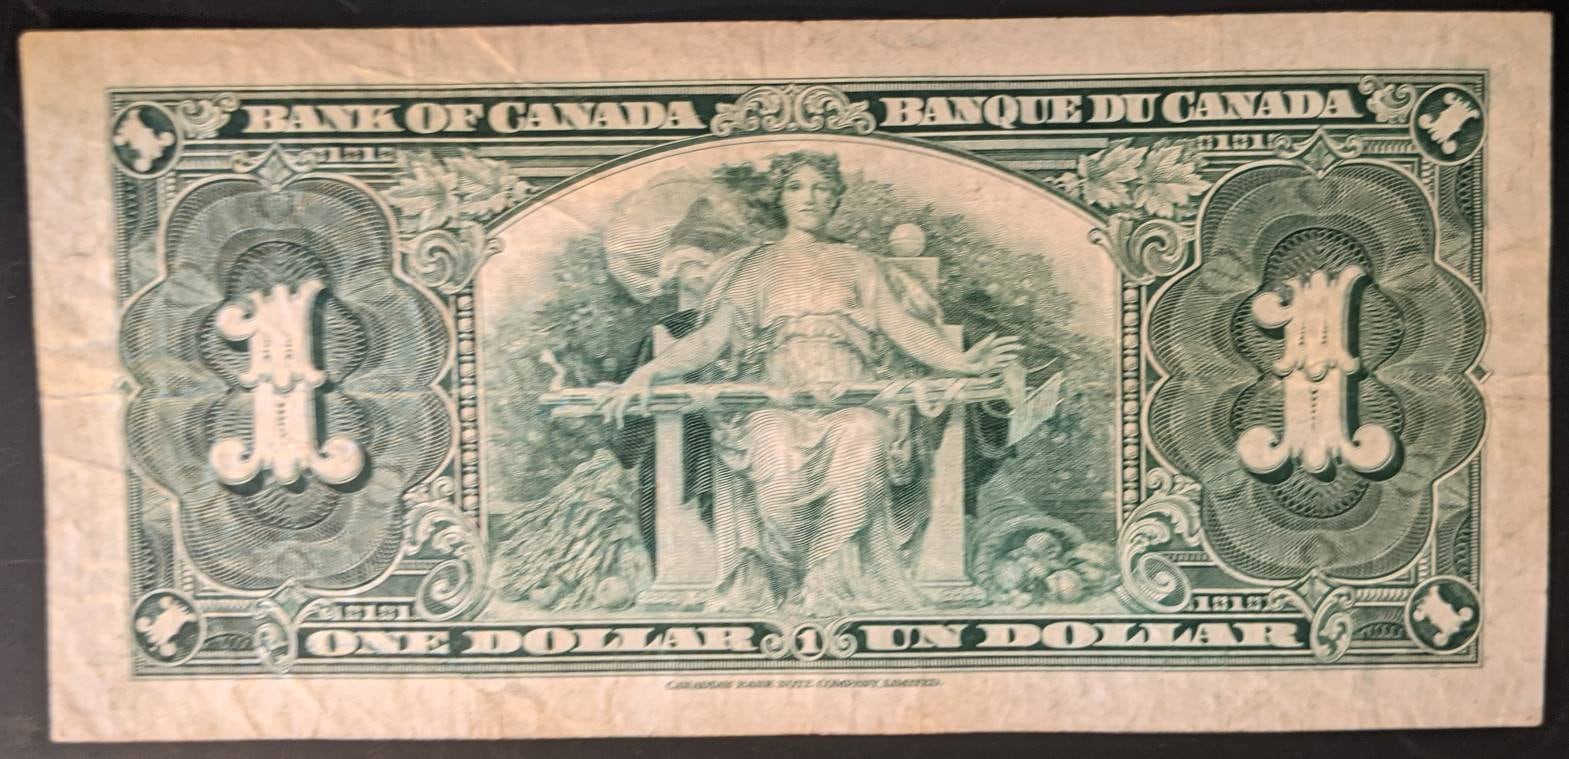 1937 Canada Circulated Pair of $1 Banknotes - Free Shipping USA